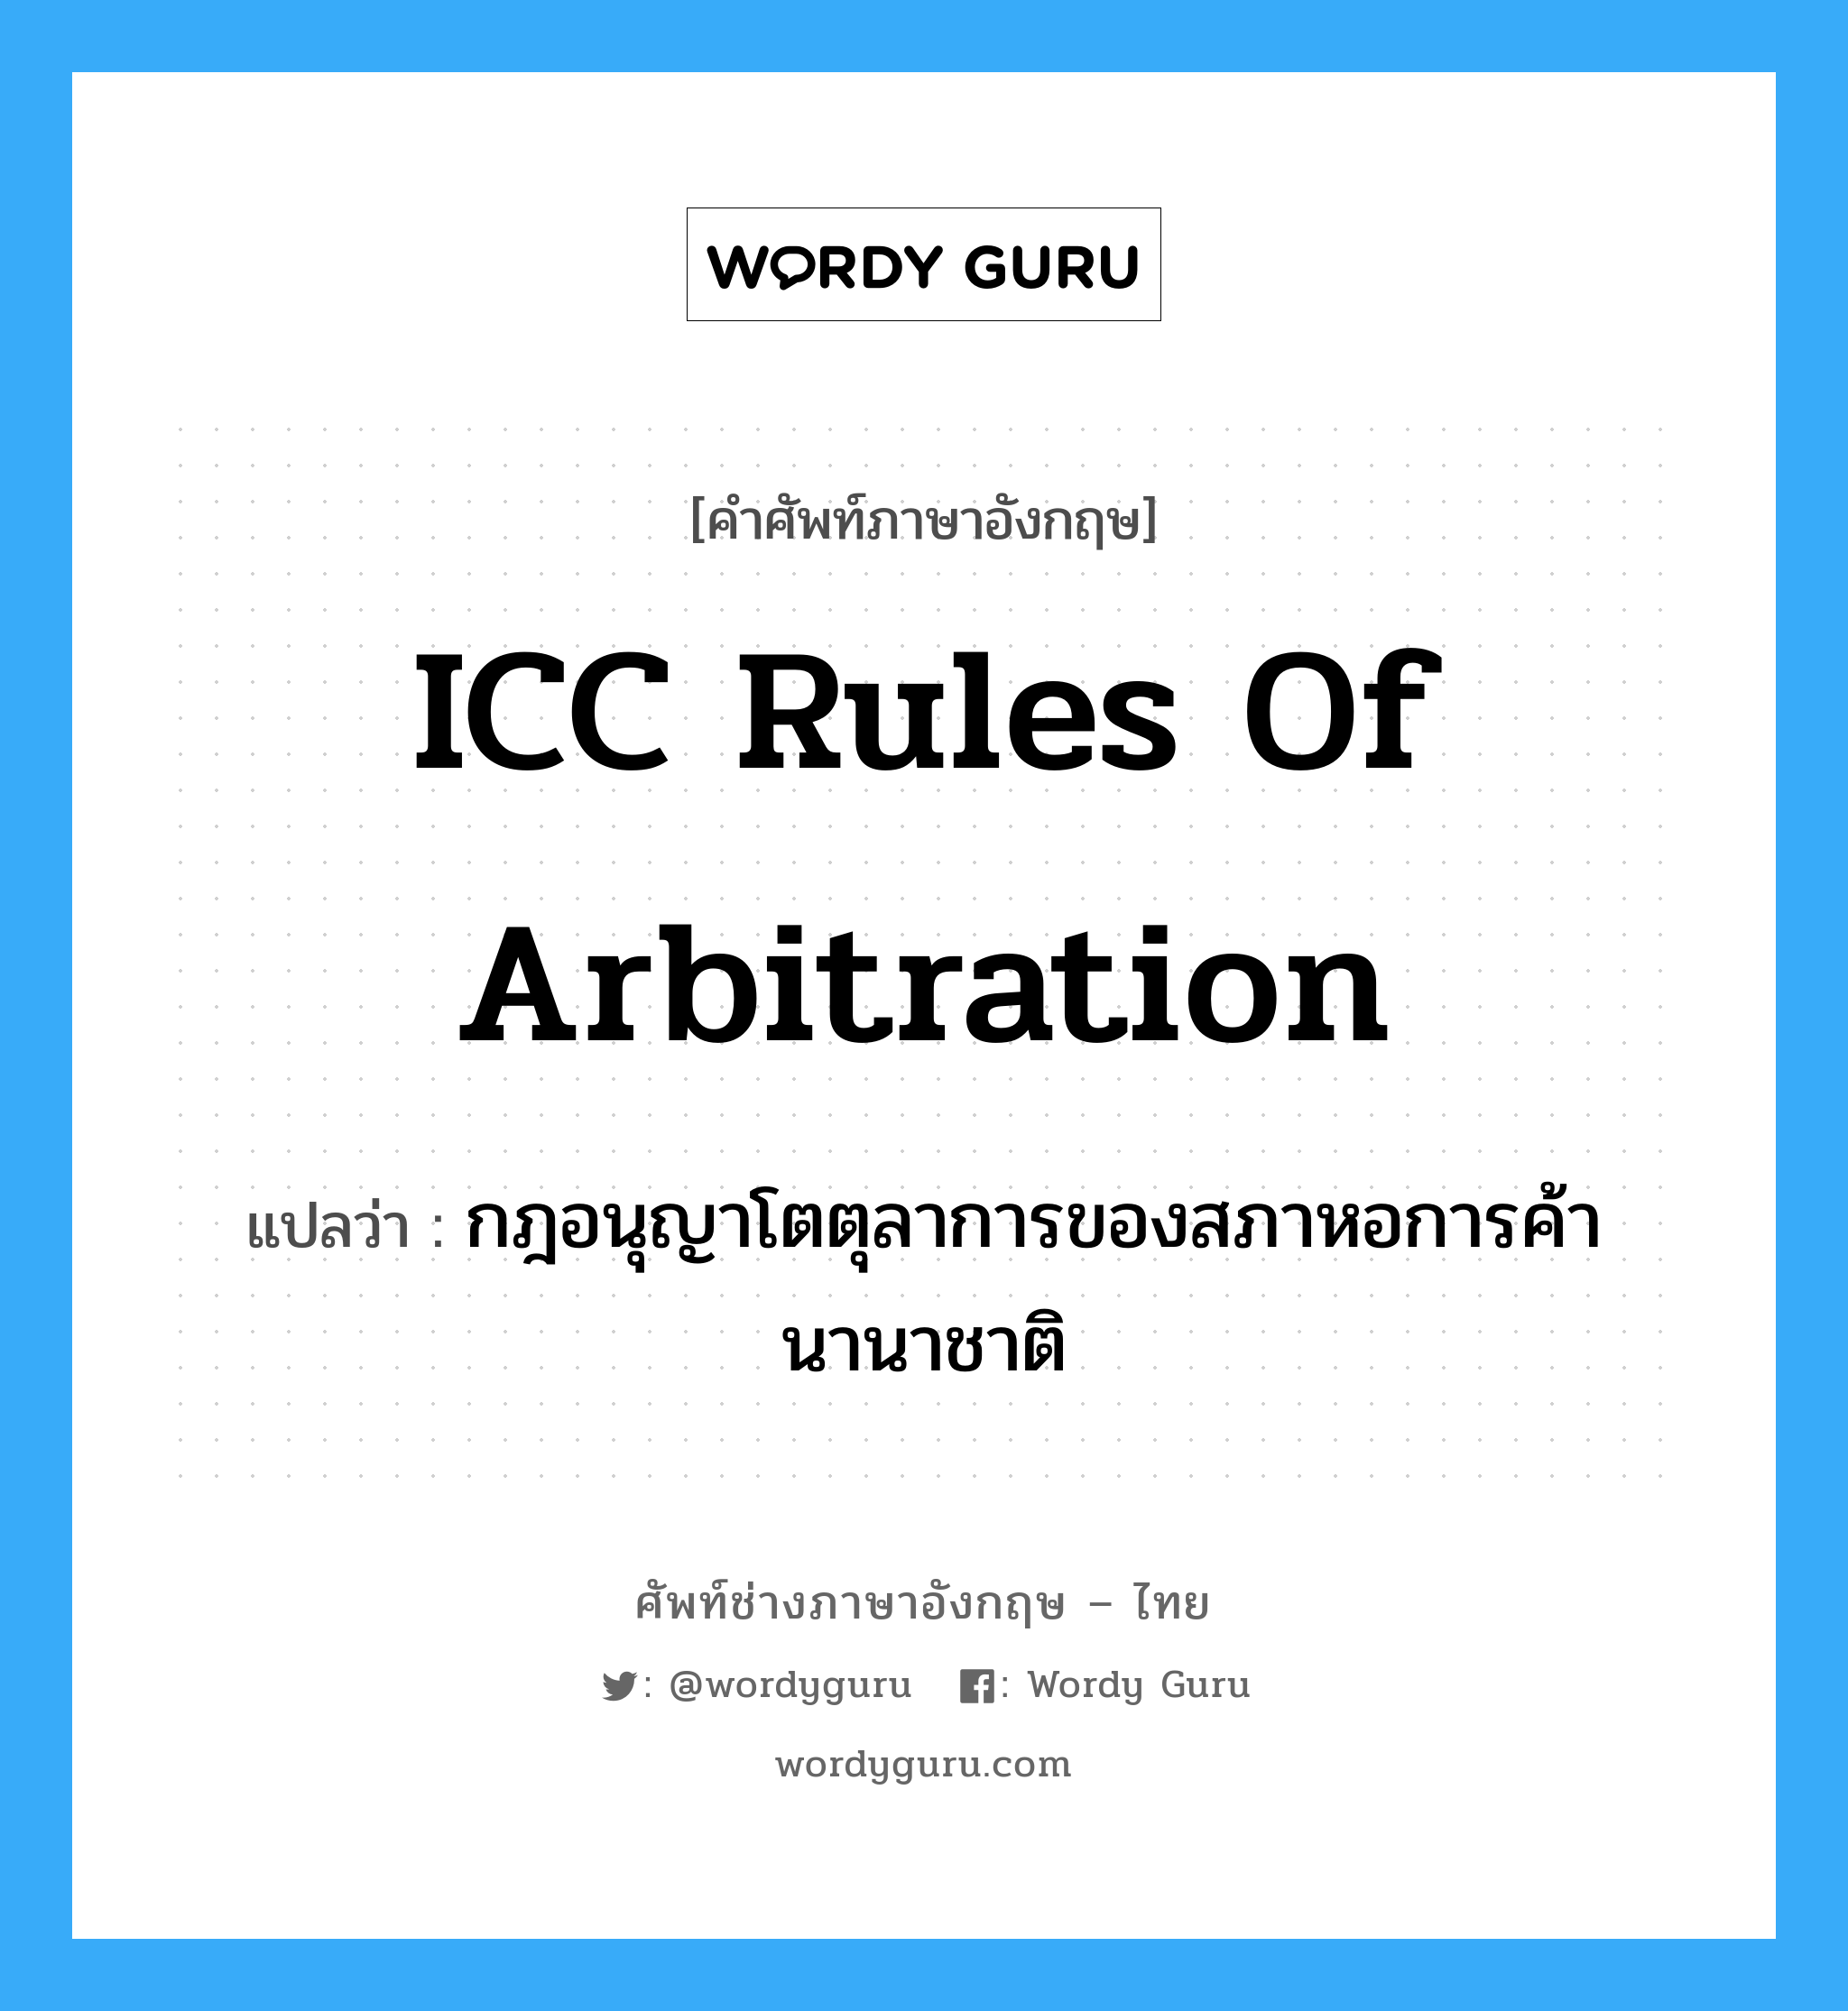 ICC Rules of Arbitration แปลว่า?, คำศัพท์ช่างภาษาอังกฤษ - ไทย ICC Rules of Arbitration คำศัพท์ภาษาอังกฤษ ICC Rules of Arbitration แปลว่า กฎอนุญาโตตุลาการของสภาหอการค้านานาชาติ